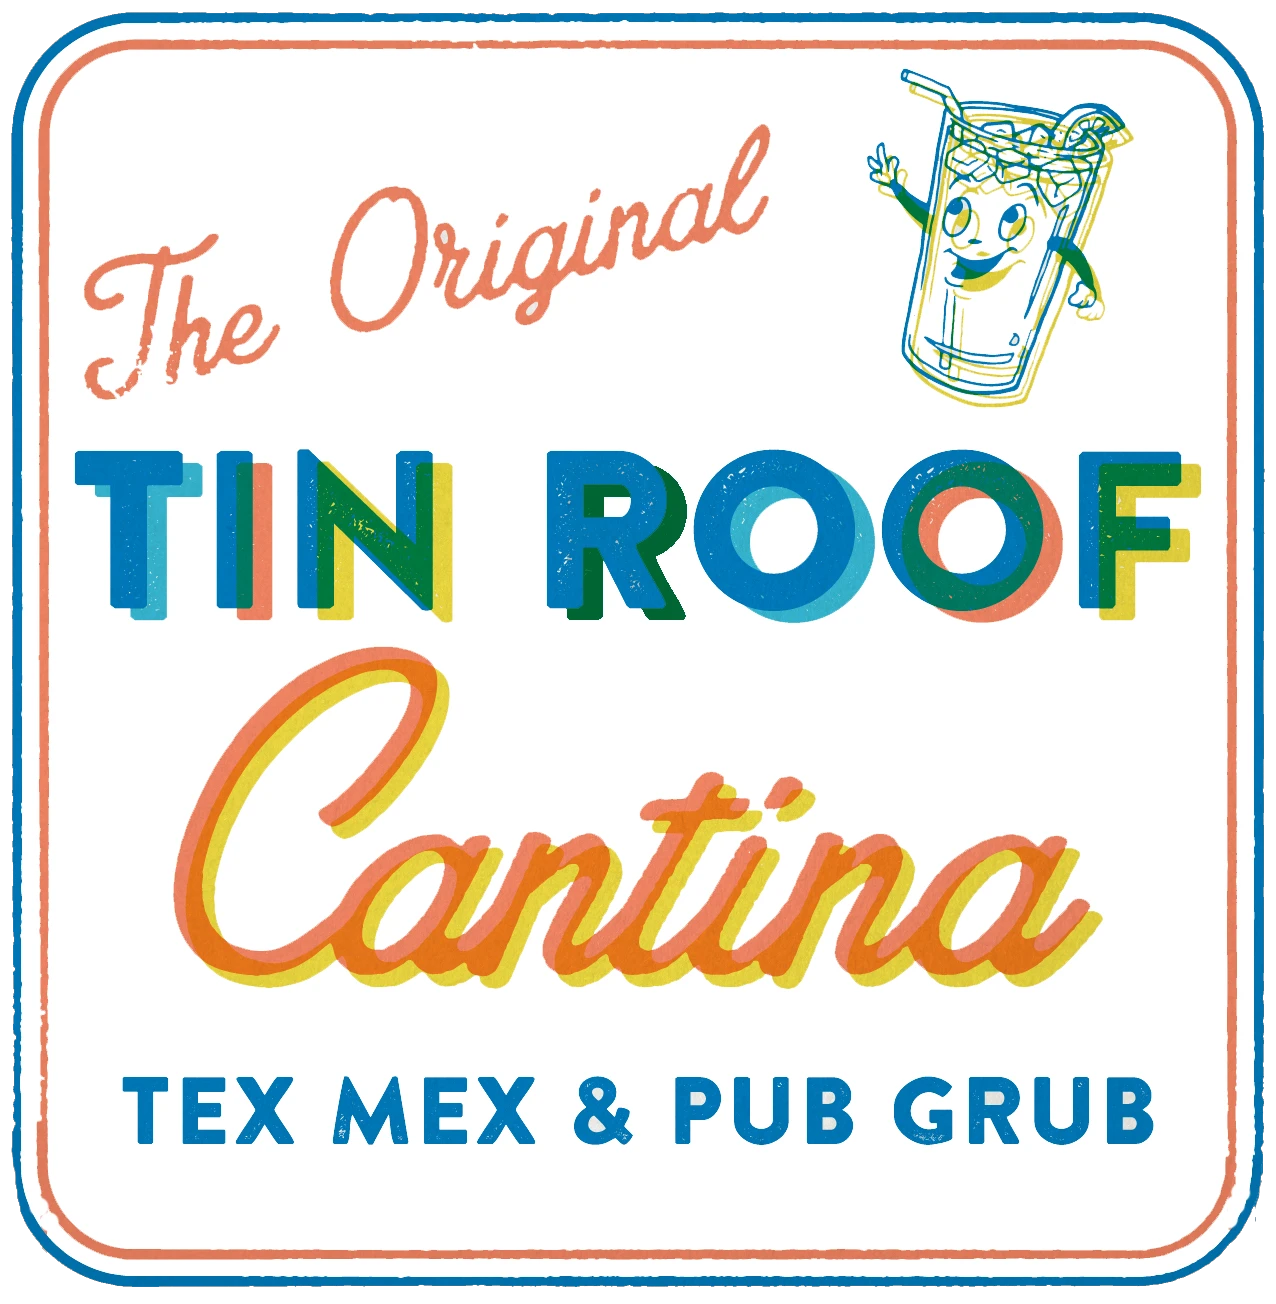 Tin Roof Cantina